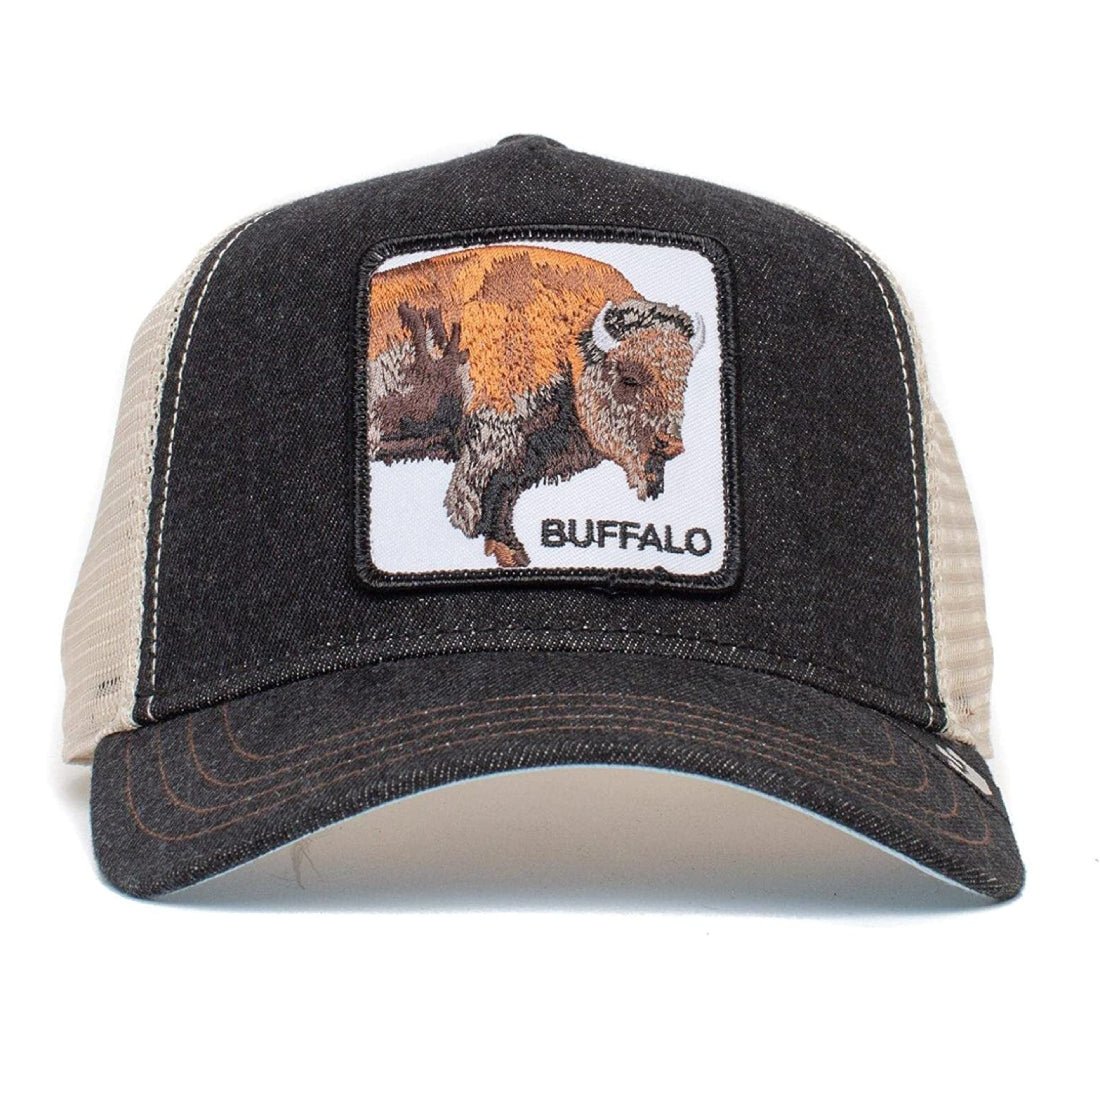 Queue Caps The Buffalo Cap - Black - قبعة - Store 974 | ستور ٩٧٤